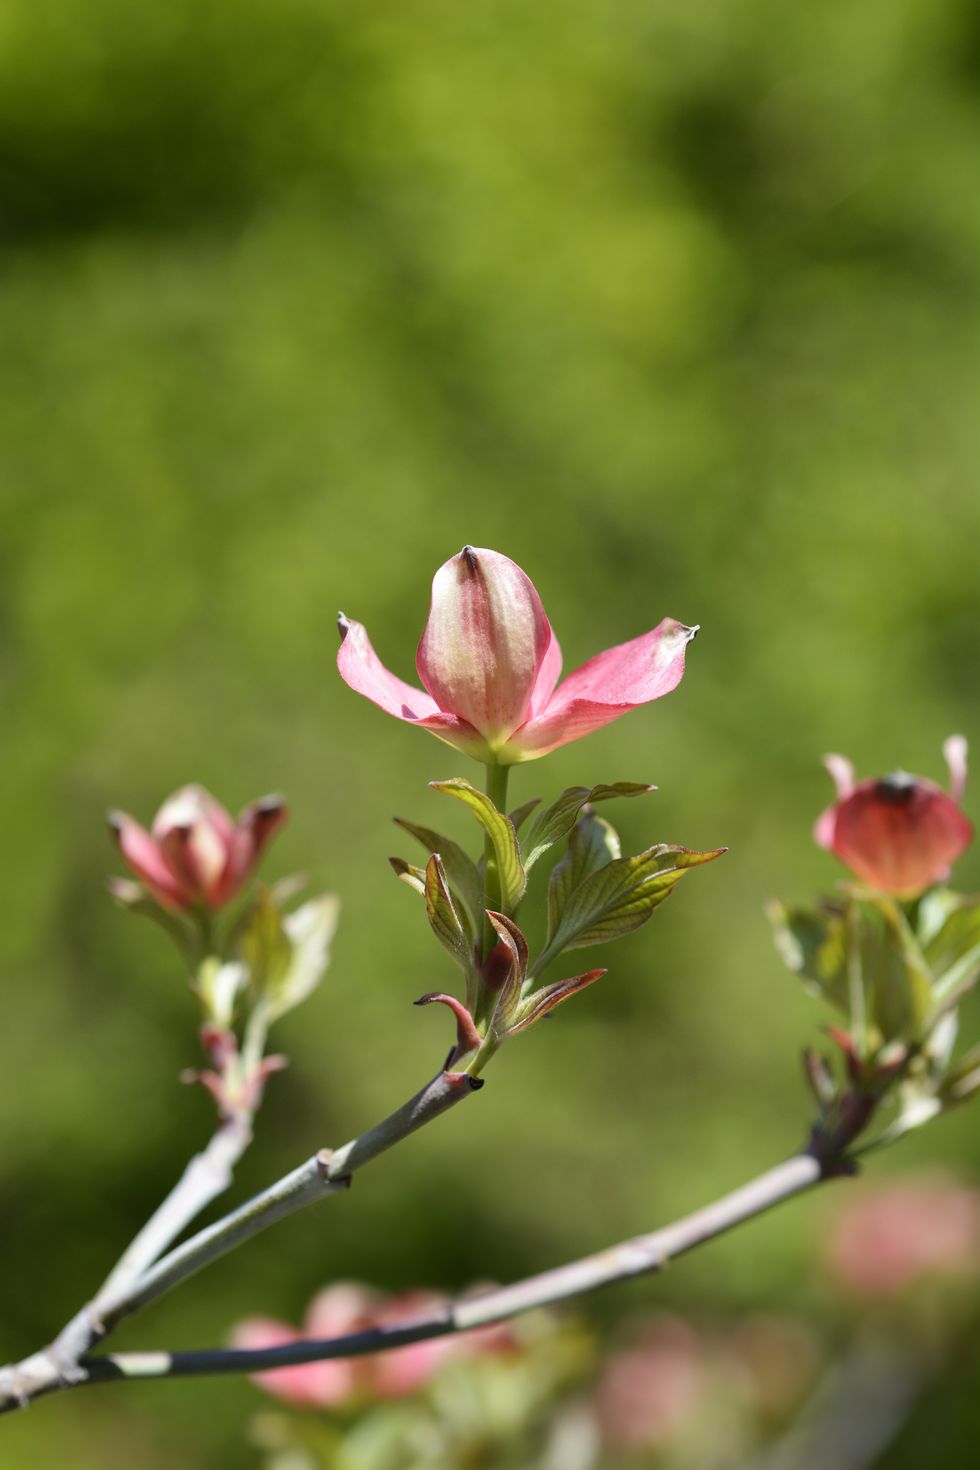 hybrid flowering dogwood stellar pink branch with flowers latin name cornus x rutgersensis stellar pink